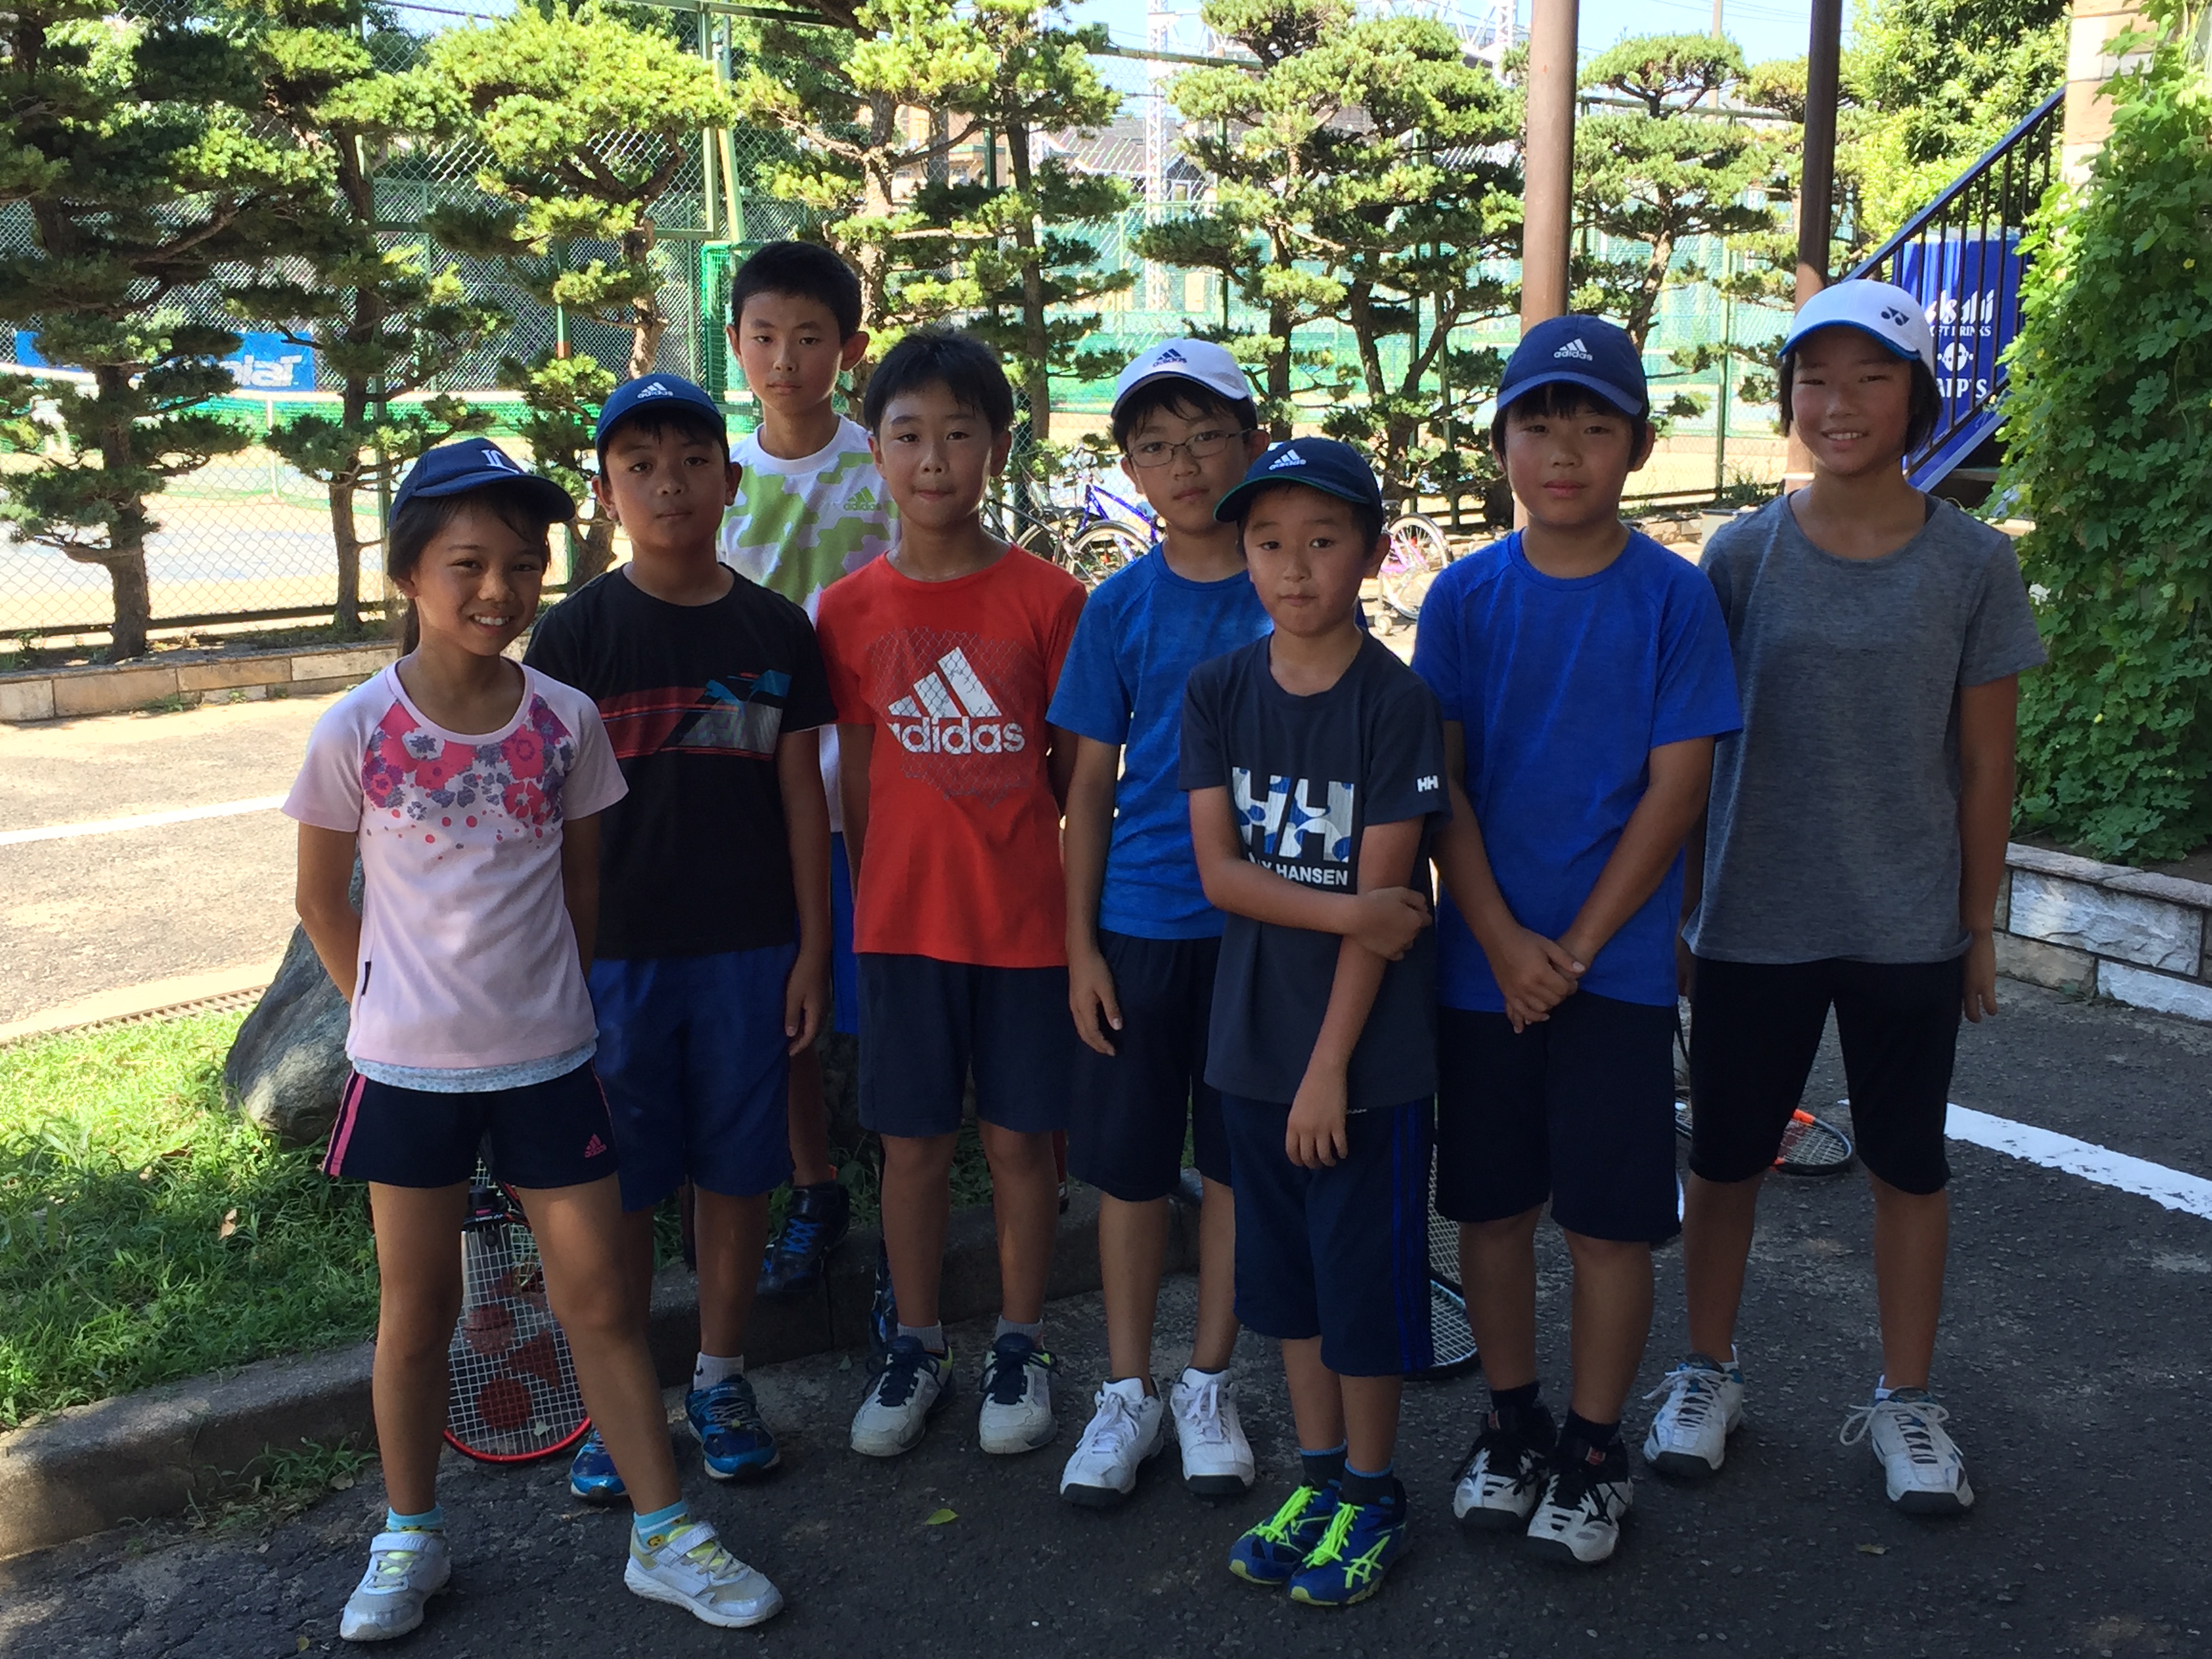 18 小学生夏休みマッチ 8 27 和光校 和光 中野 川越のテニススクールなら石井真テニスアカデミー